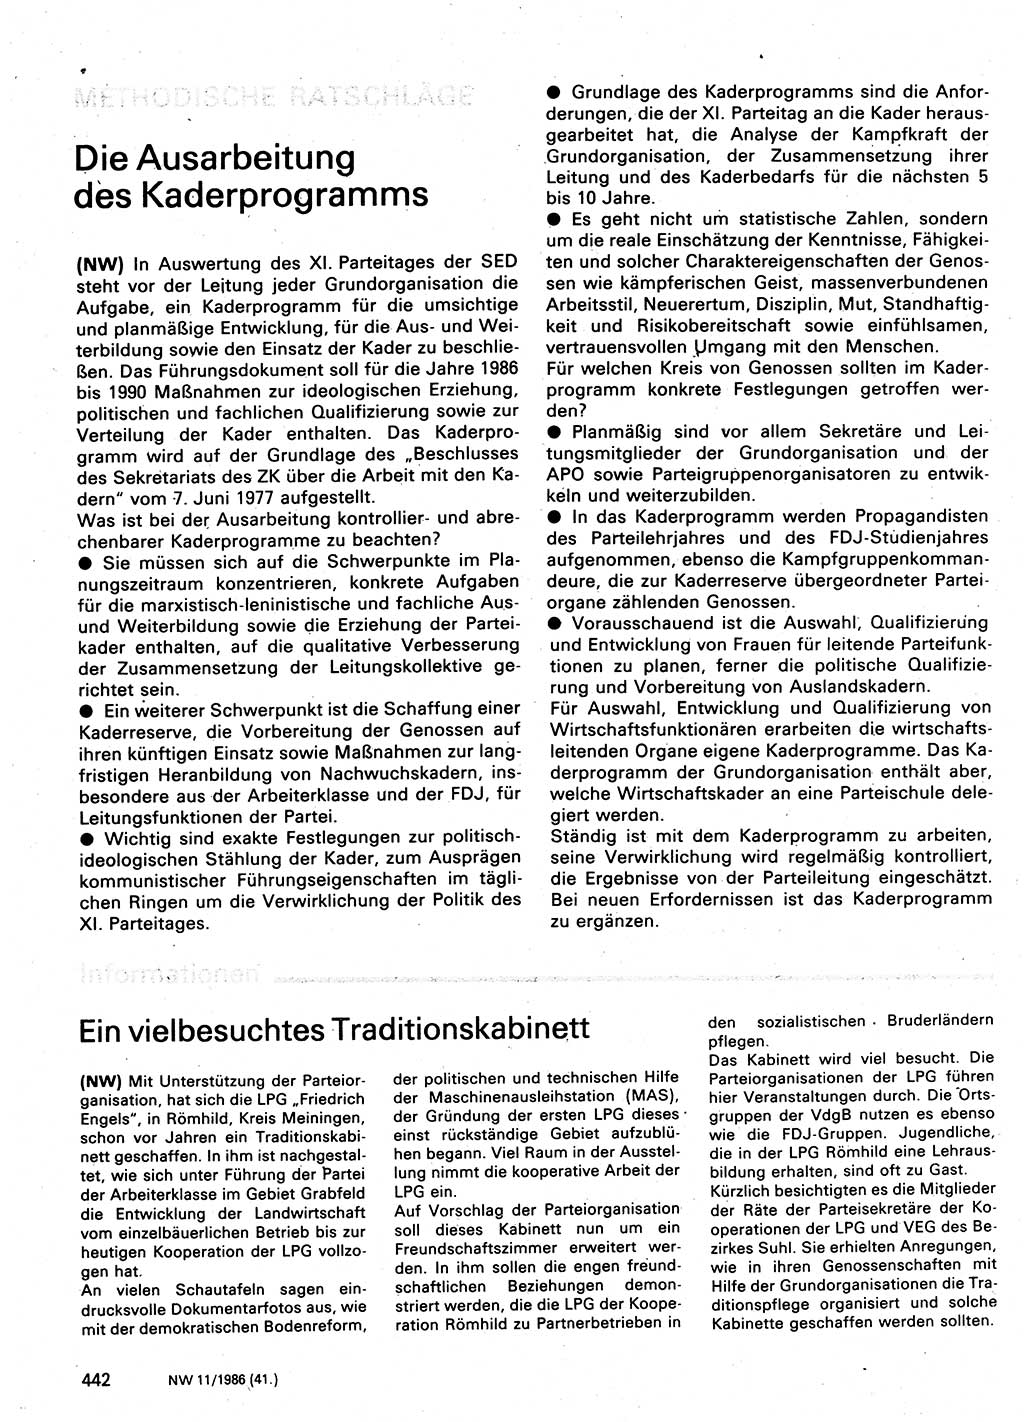 Neuer Weg (NW), Organ des Zentralkomitees (ZK) der SED (Sozialistische Einheitspartei Deutschlands) für Fragen des Parteilebens, 41. Jahrgang [Deutsche Demokratische Republik (DDR)] 1986, Seite 442 (NW ZK SED DDR 1986, S. 442)